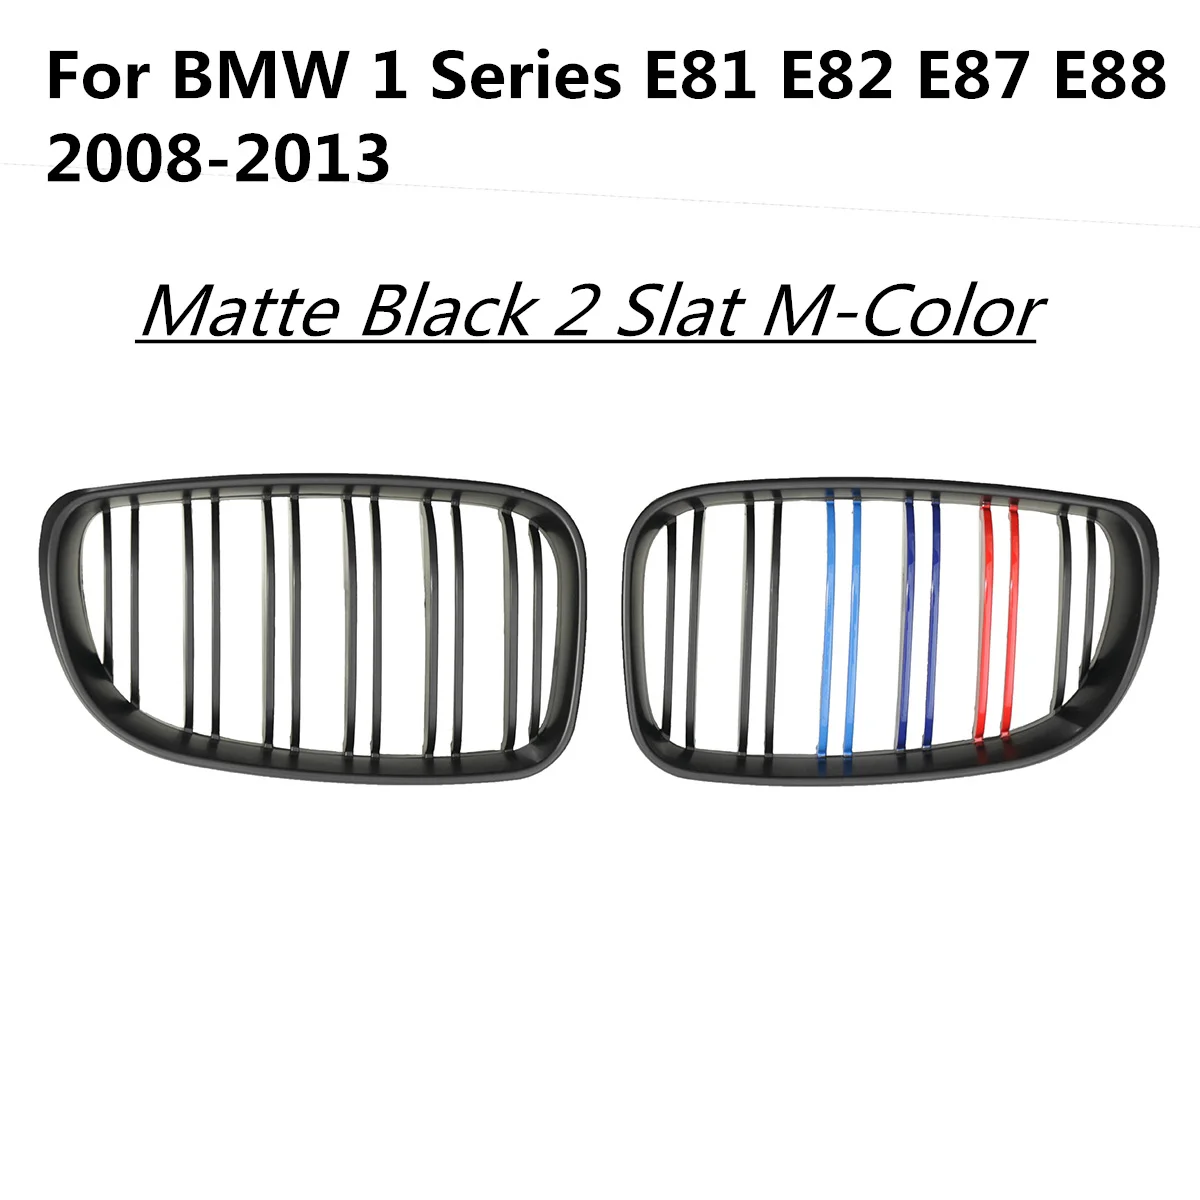 Пара ABS двойная линия 2 планка M-color передний бампер почечные гоночные решетки для BMW 1 серии E81 E82 E87 E88 Facelifted LCI 2008-2013 - Цвет: Matte Black 2-M